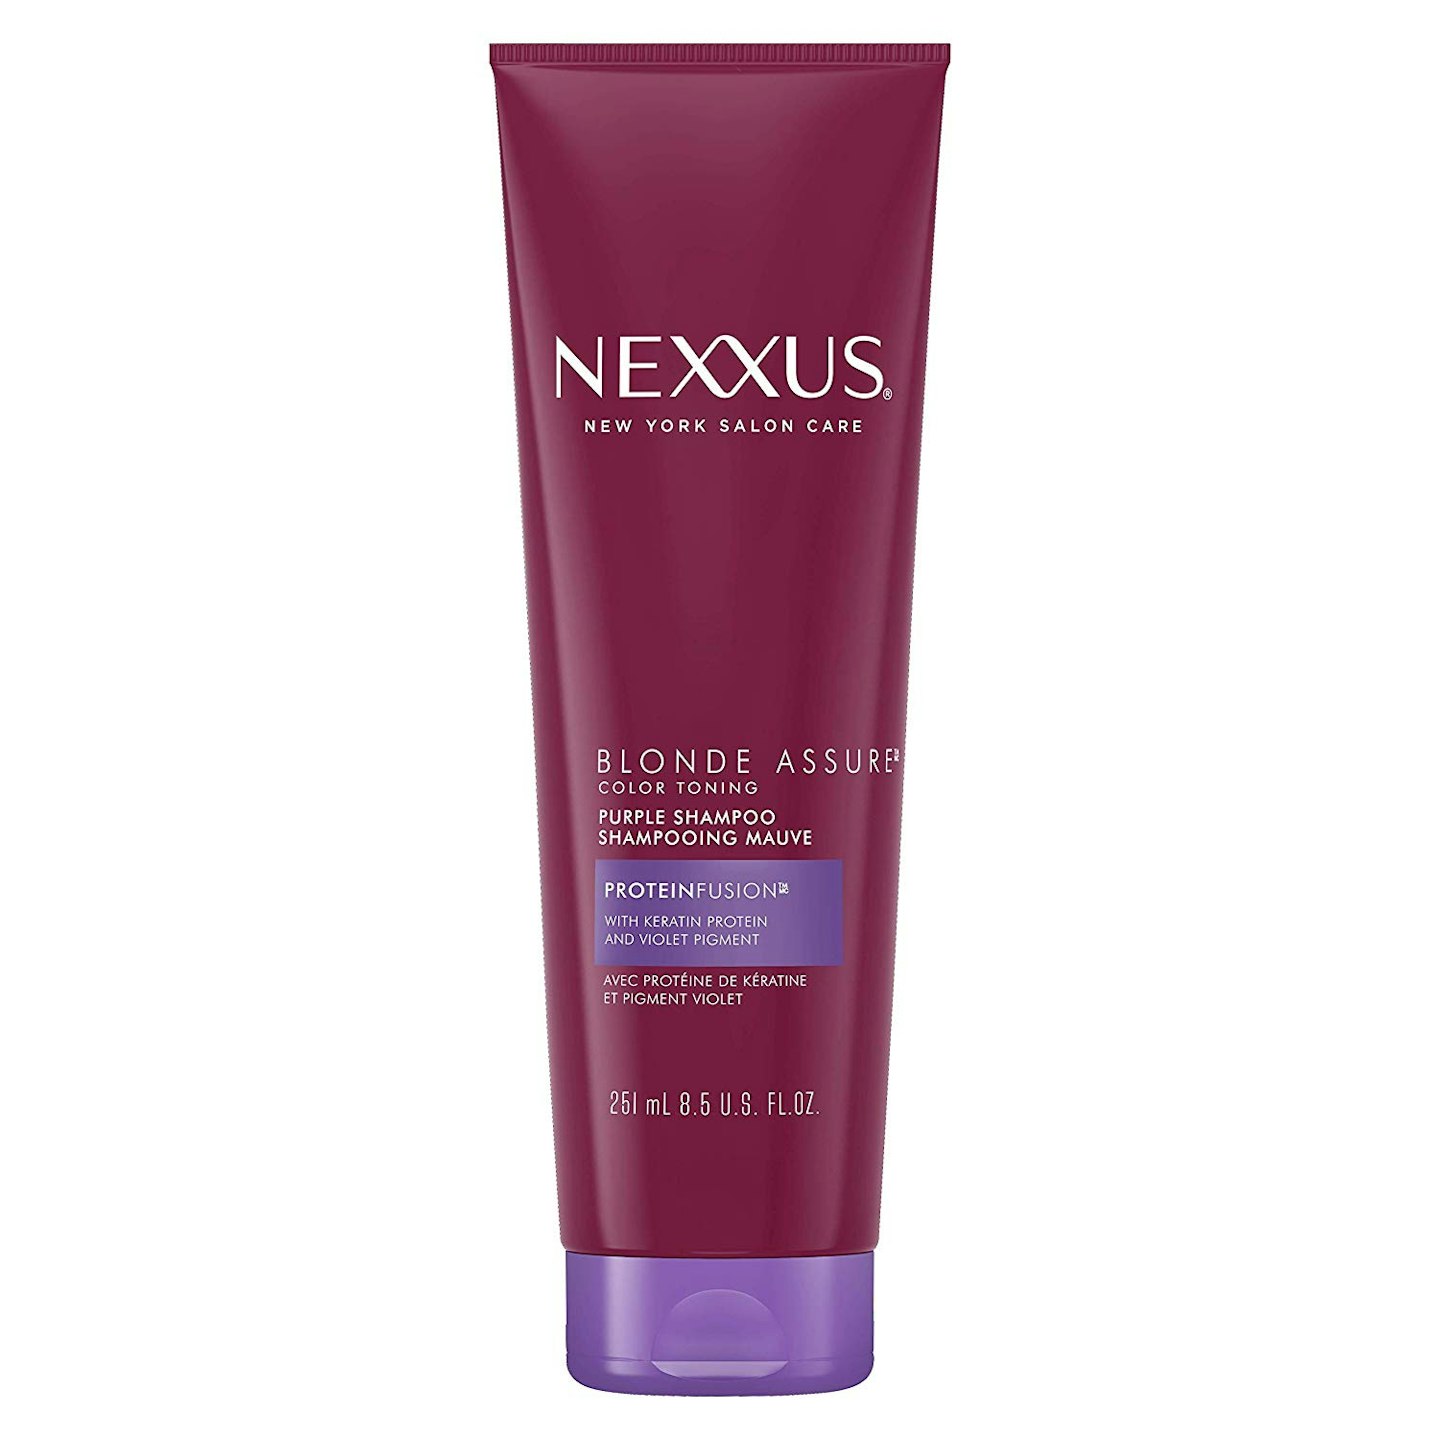 Nexxus Blonde Assure Purple Shampoo, £7.99